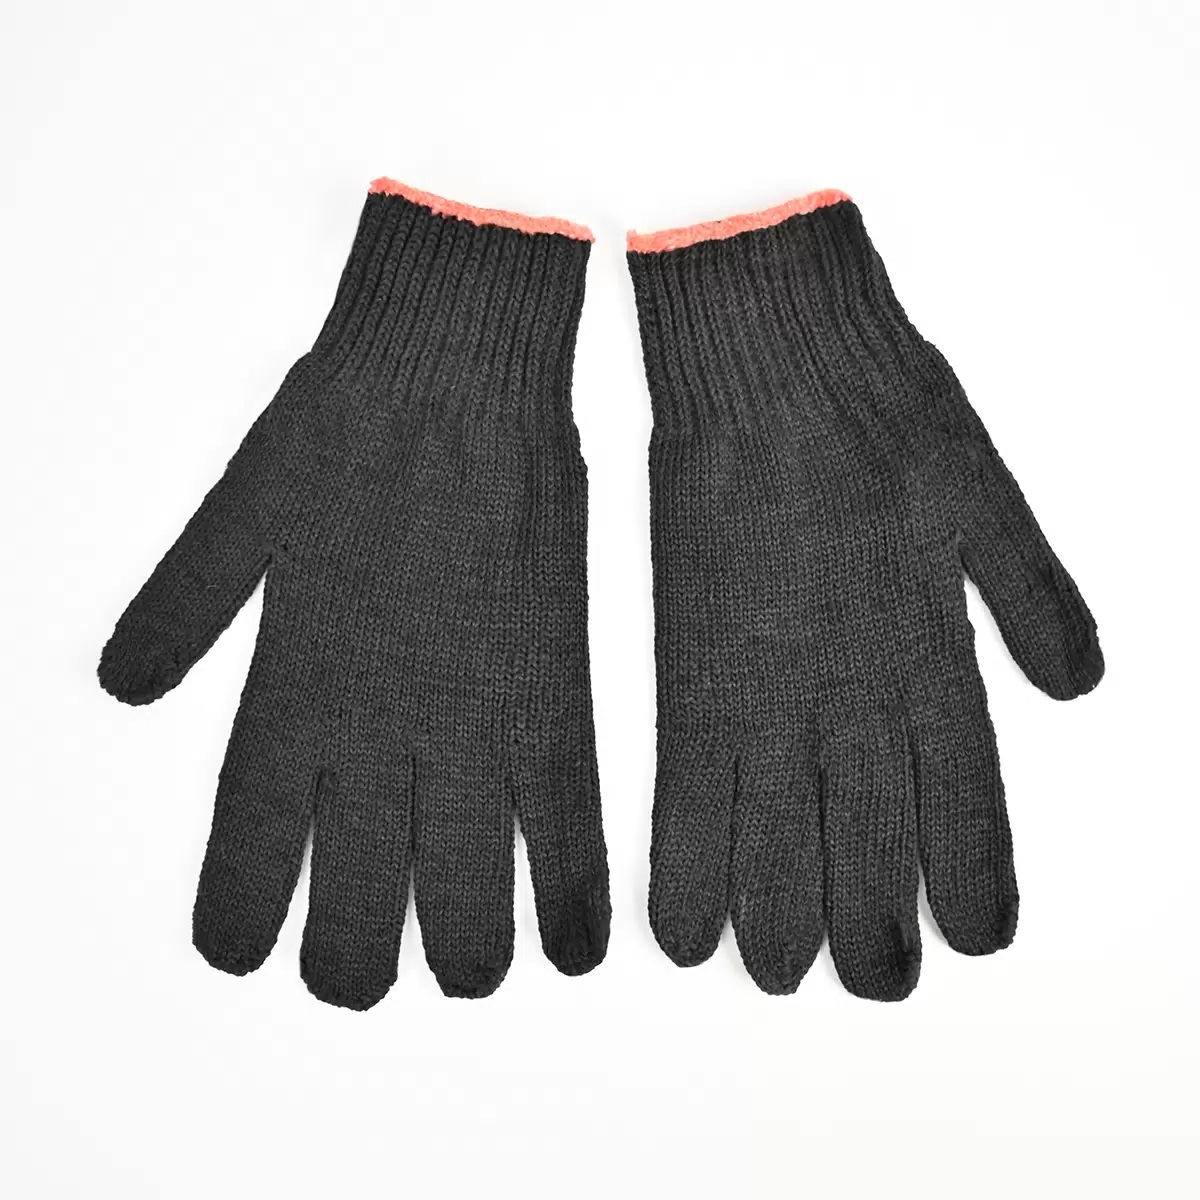 Перчатки трикотажные Супер-Люкс с ПВХ черные 24 размер перчатки хб 10 класс точечное покрытие пвх r8000173